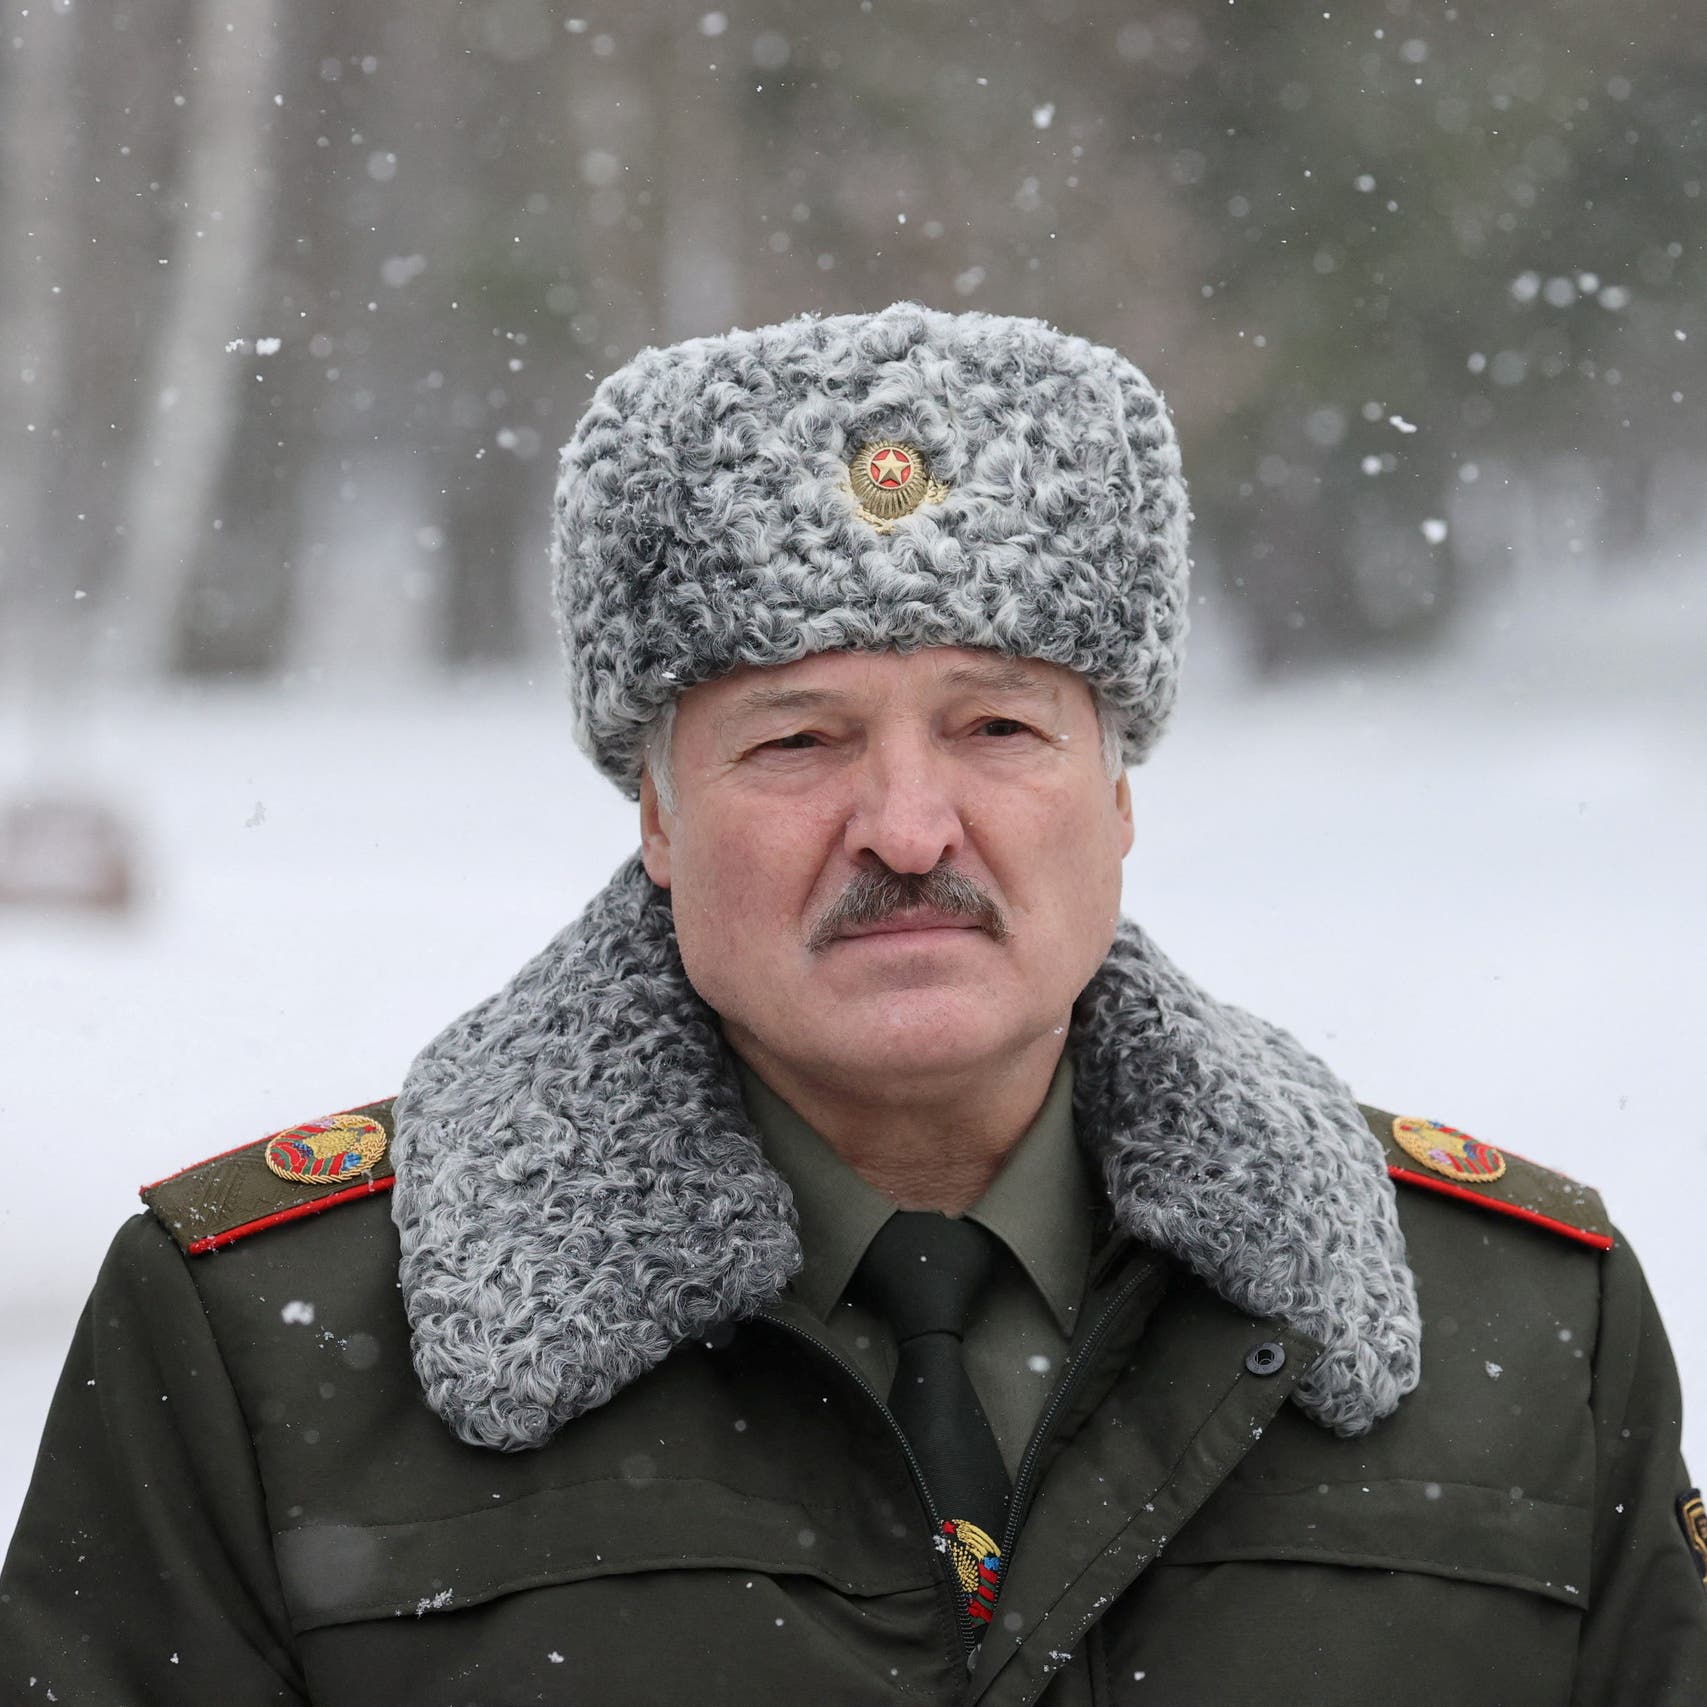 تصريح غريب.. رئيس بيلاروسيا سيصبح كولونيل بالجيش الروسي